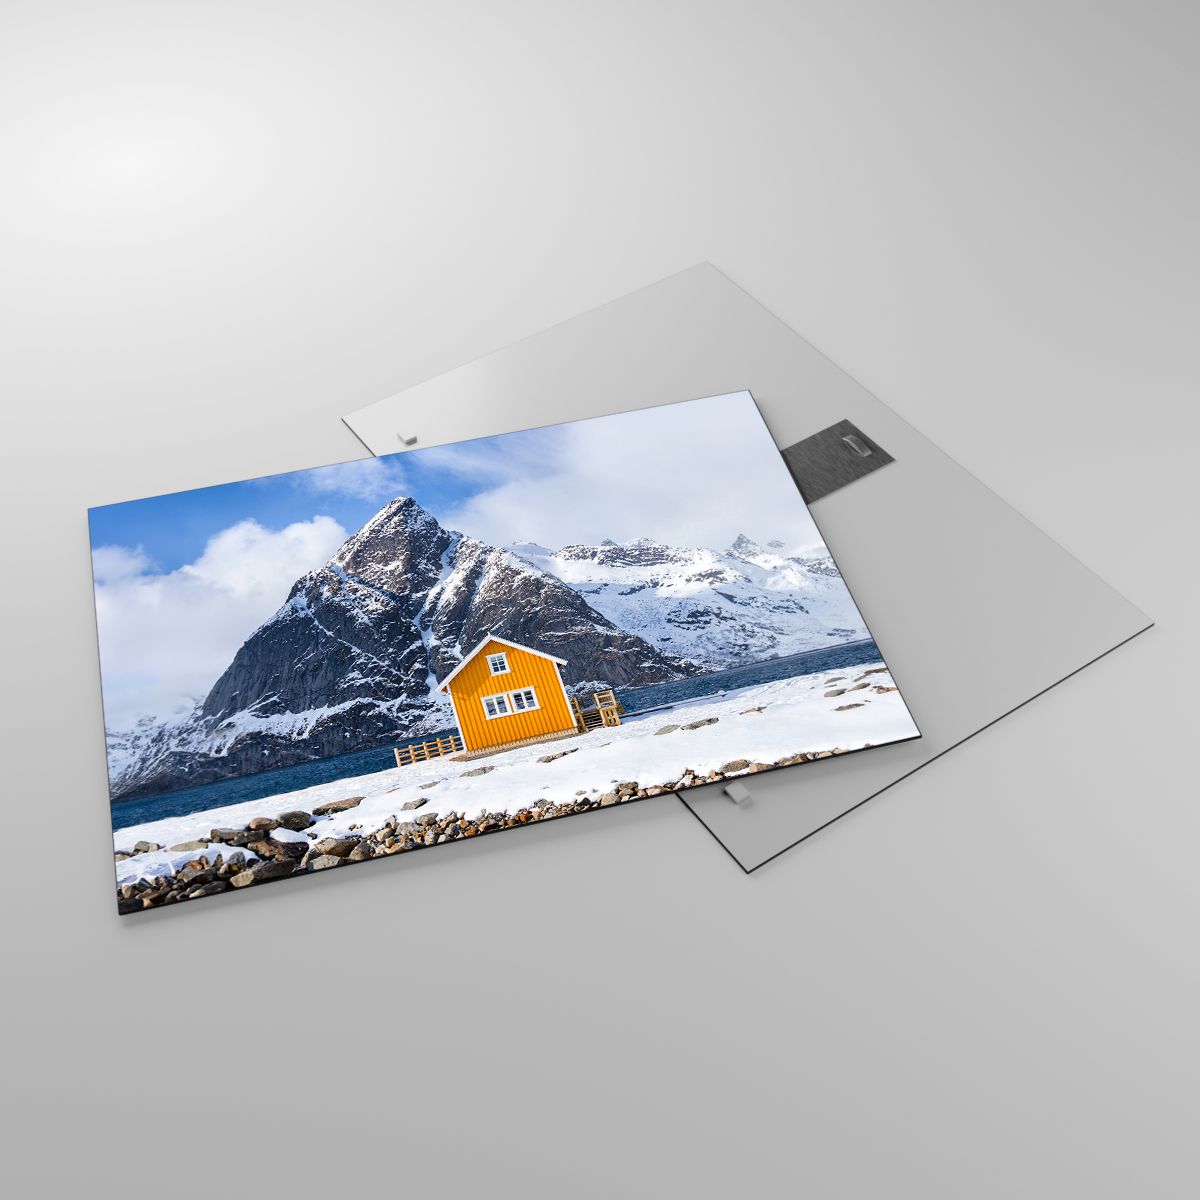 Image sur verre Hiver, Image sur verre Alpes, Image sur verre Montagnes